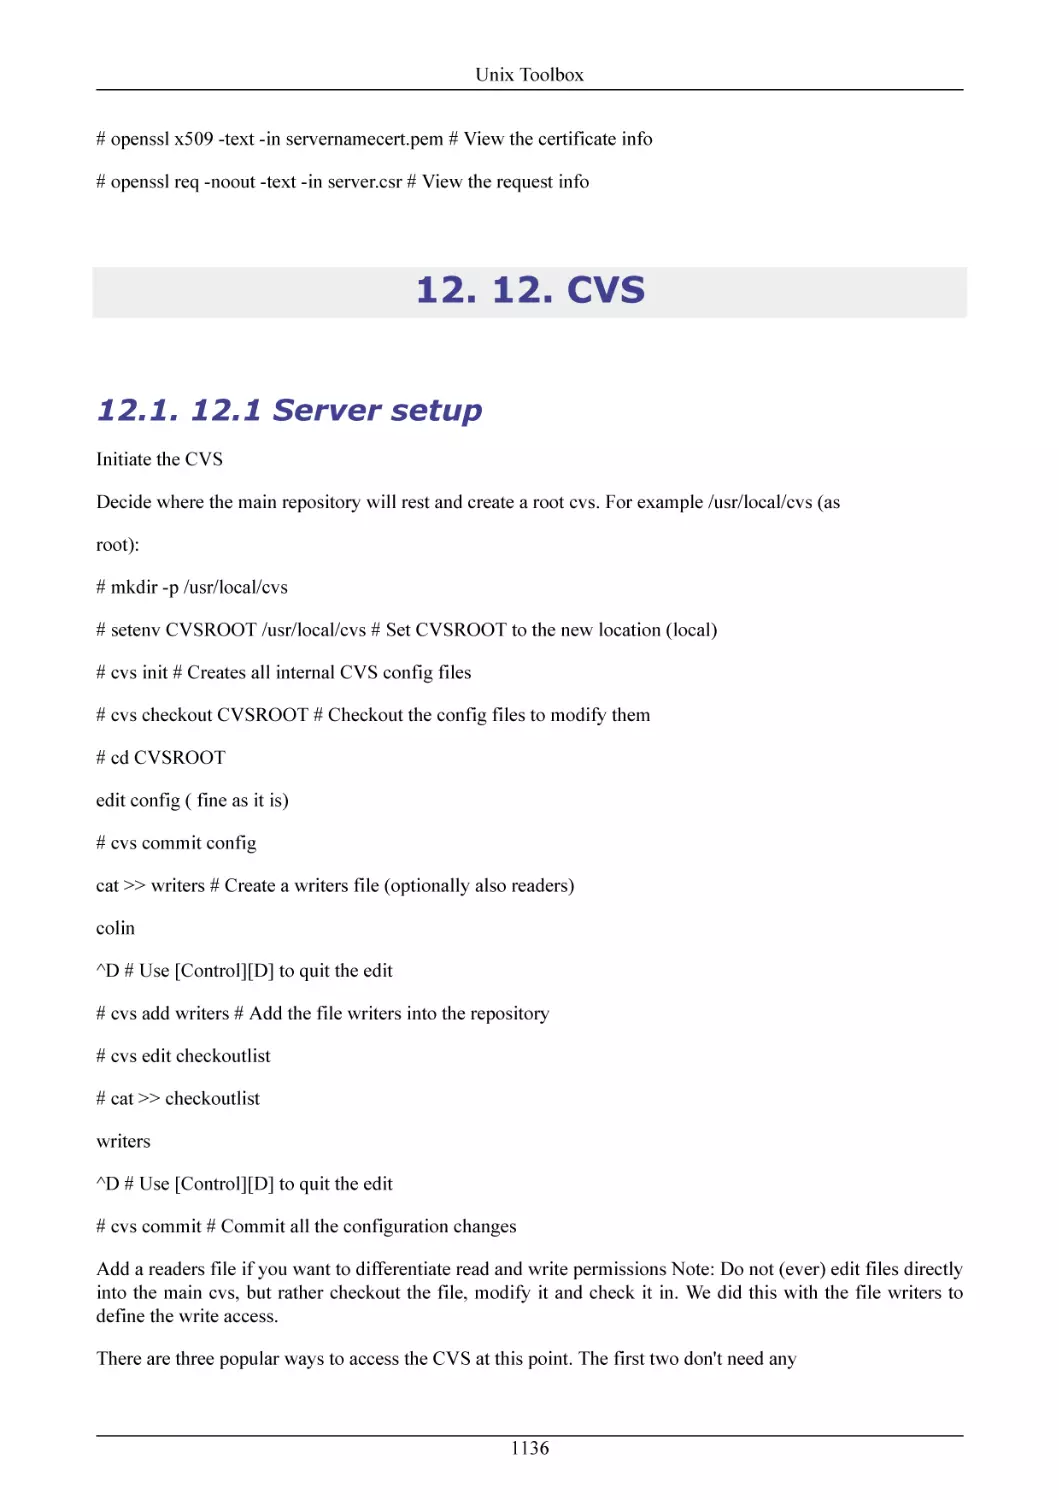 12. CVS
12.1 Server setup